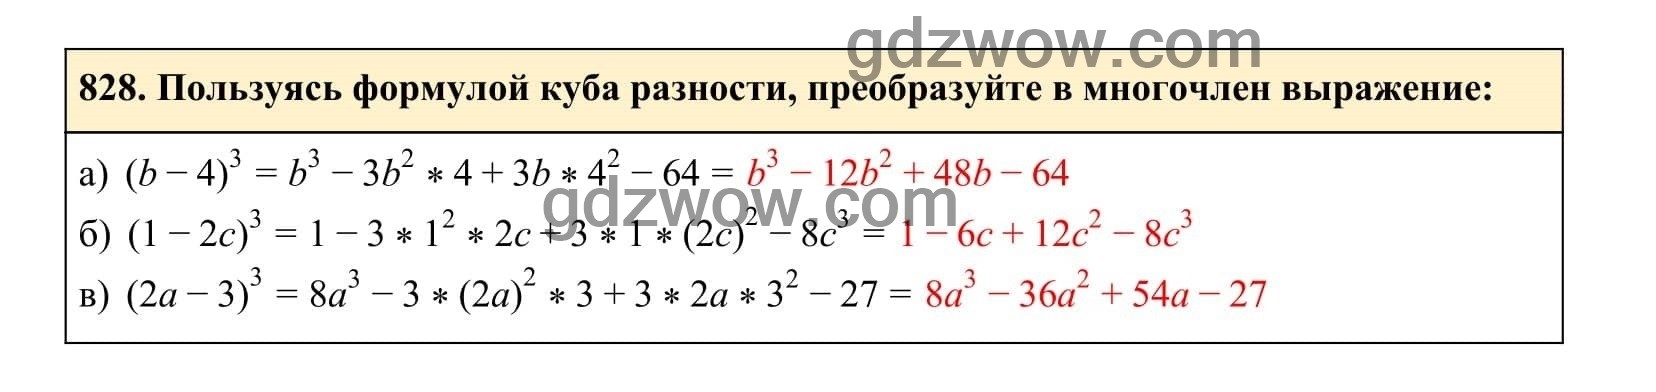 Упражнение 828 - ГДЗ по Алгебре 7 класс Учебник Макарычев (решебник) - GDZwow